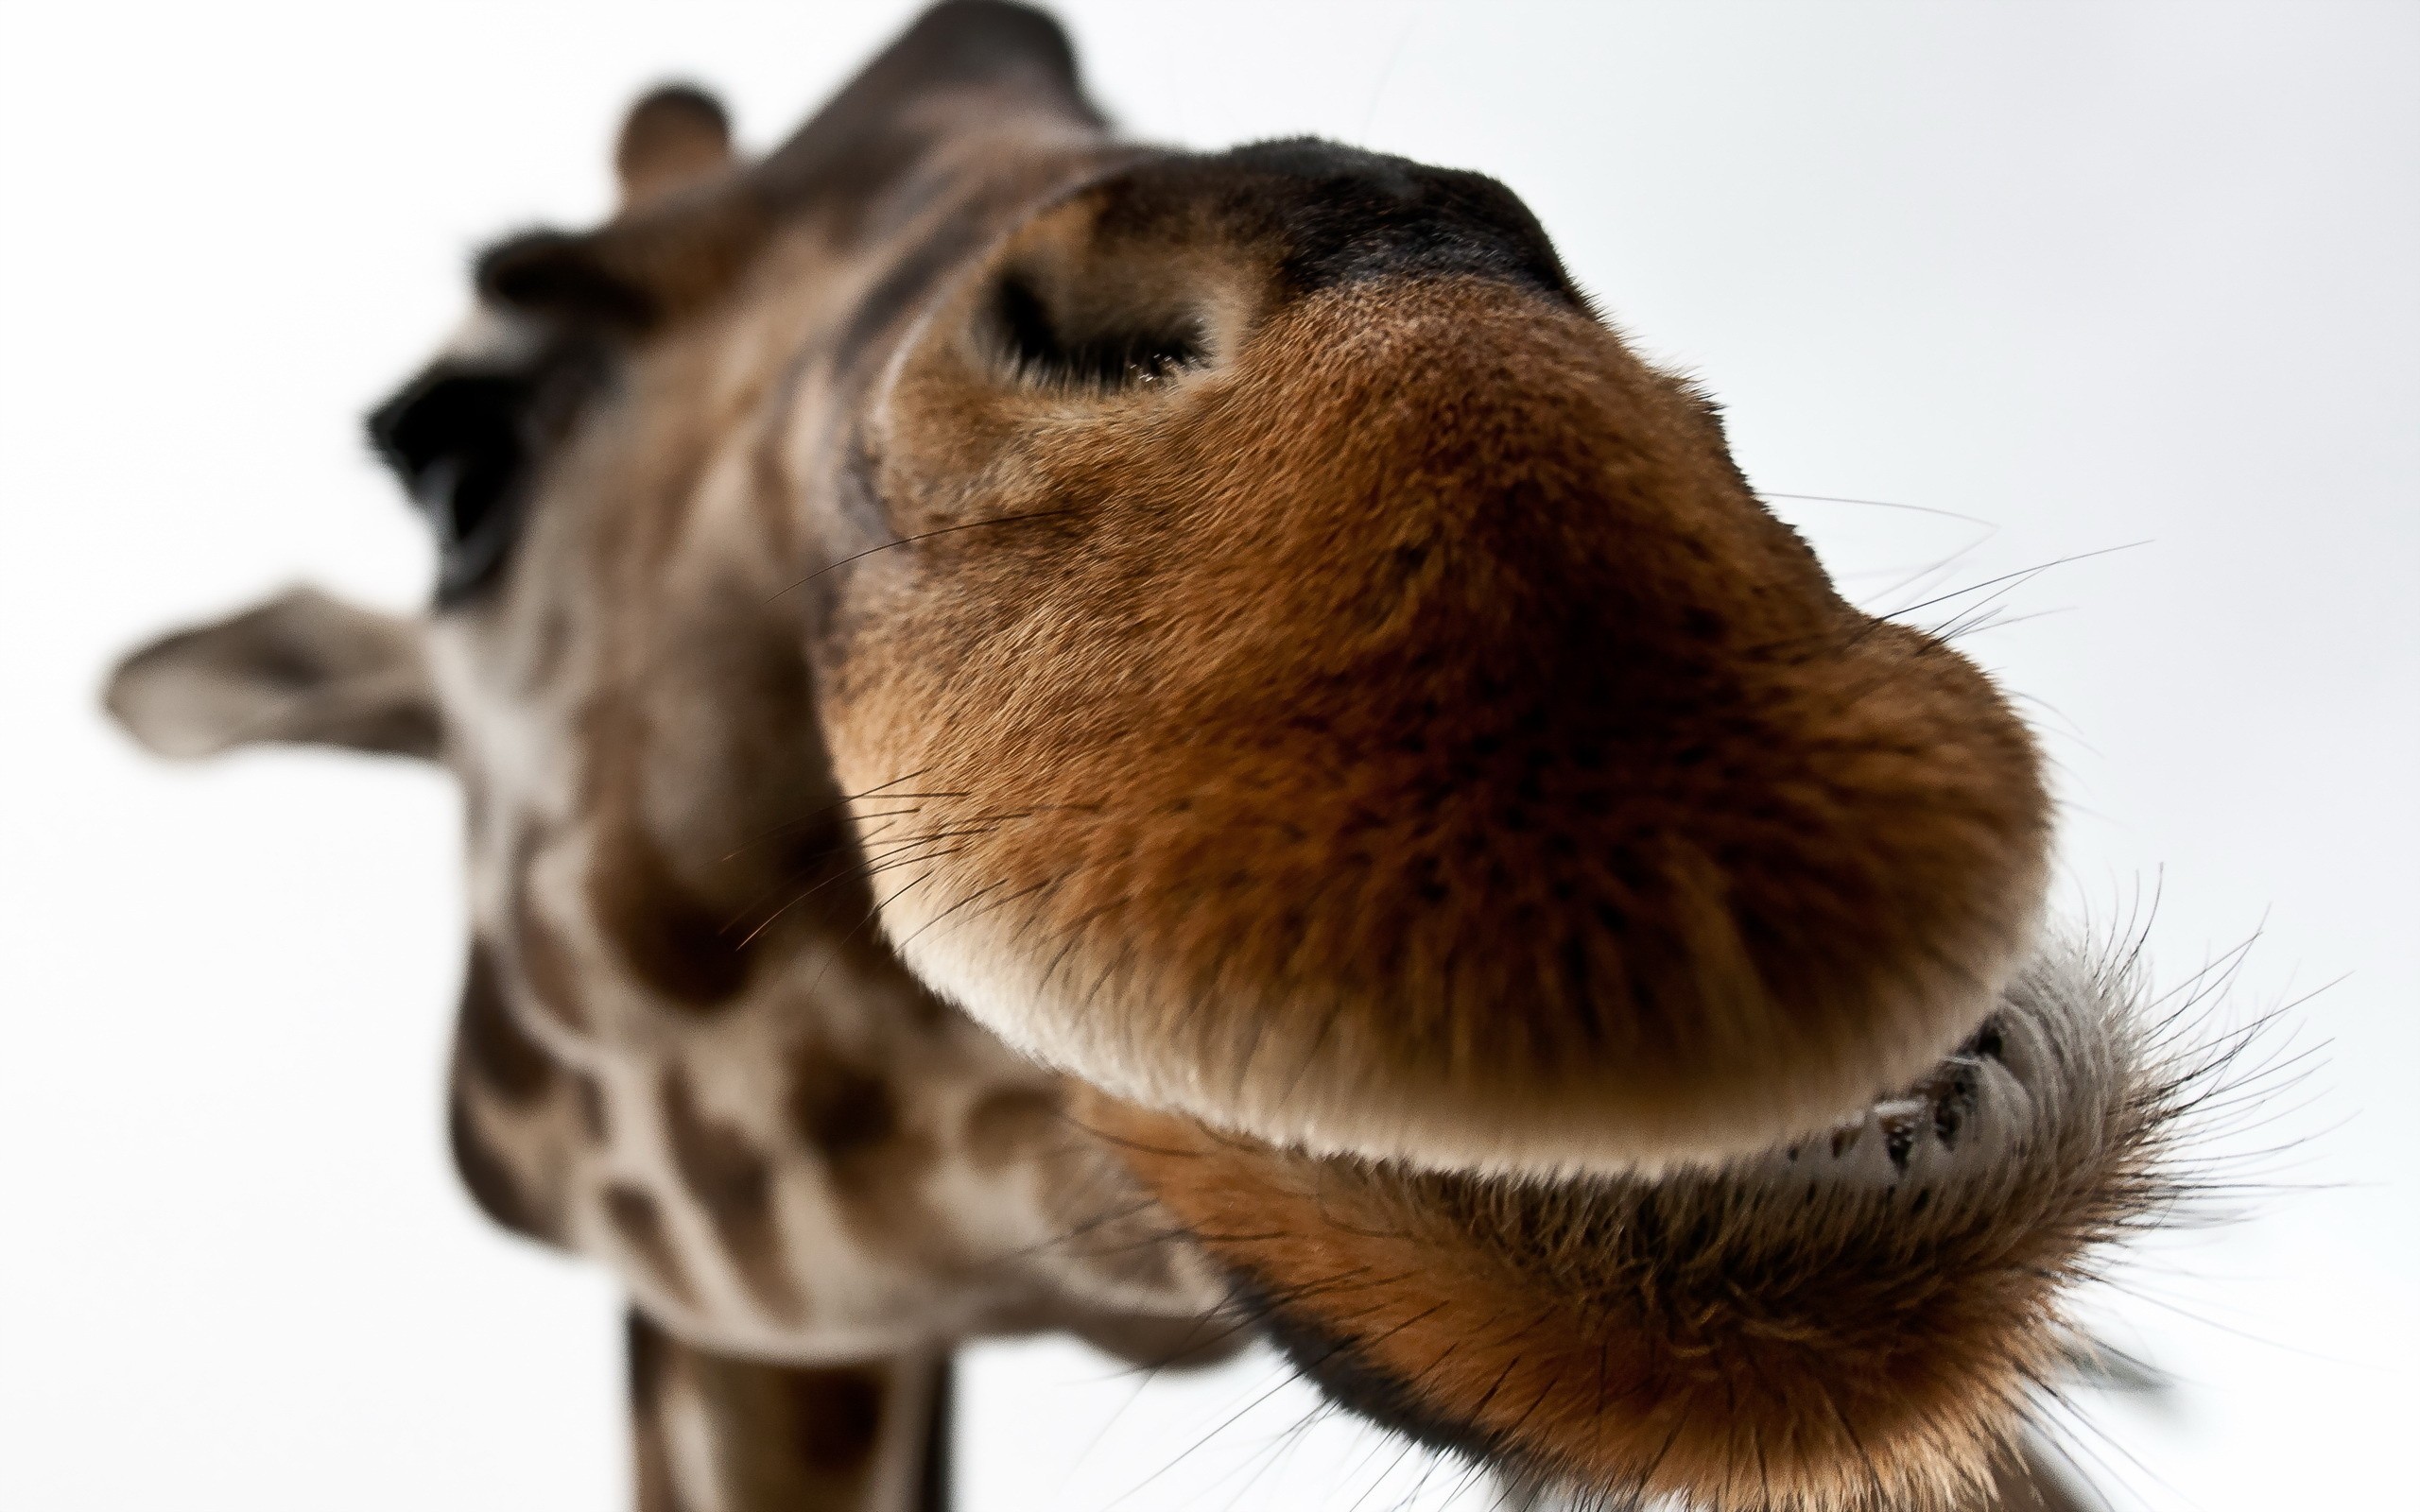 Download mobile wallpaper Animal, Giraffe for free.